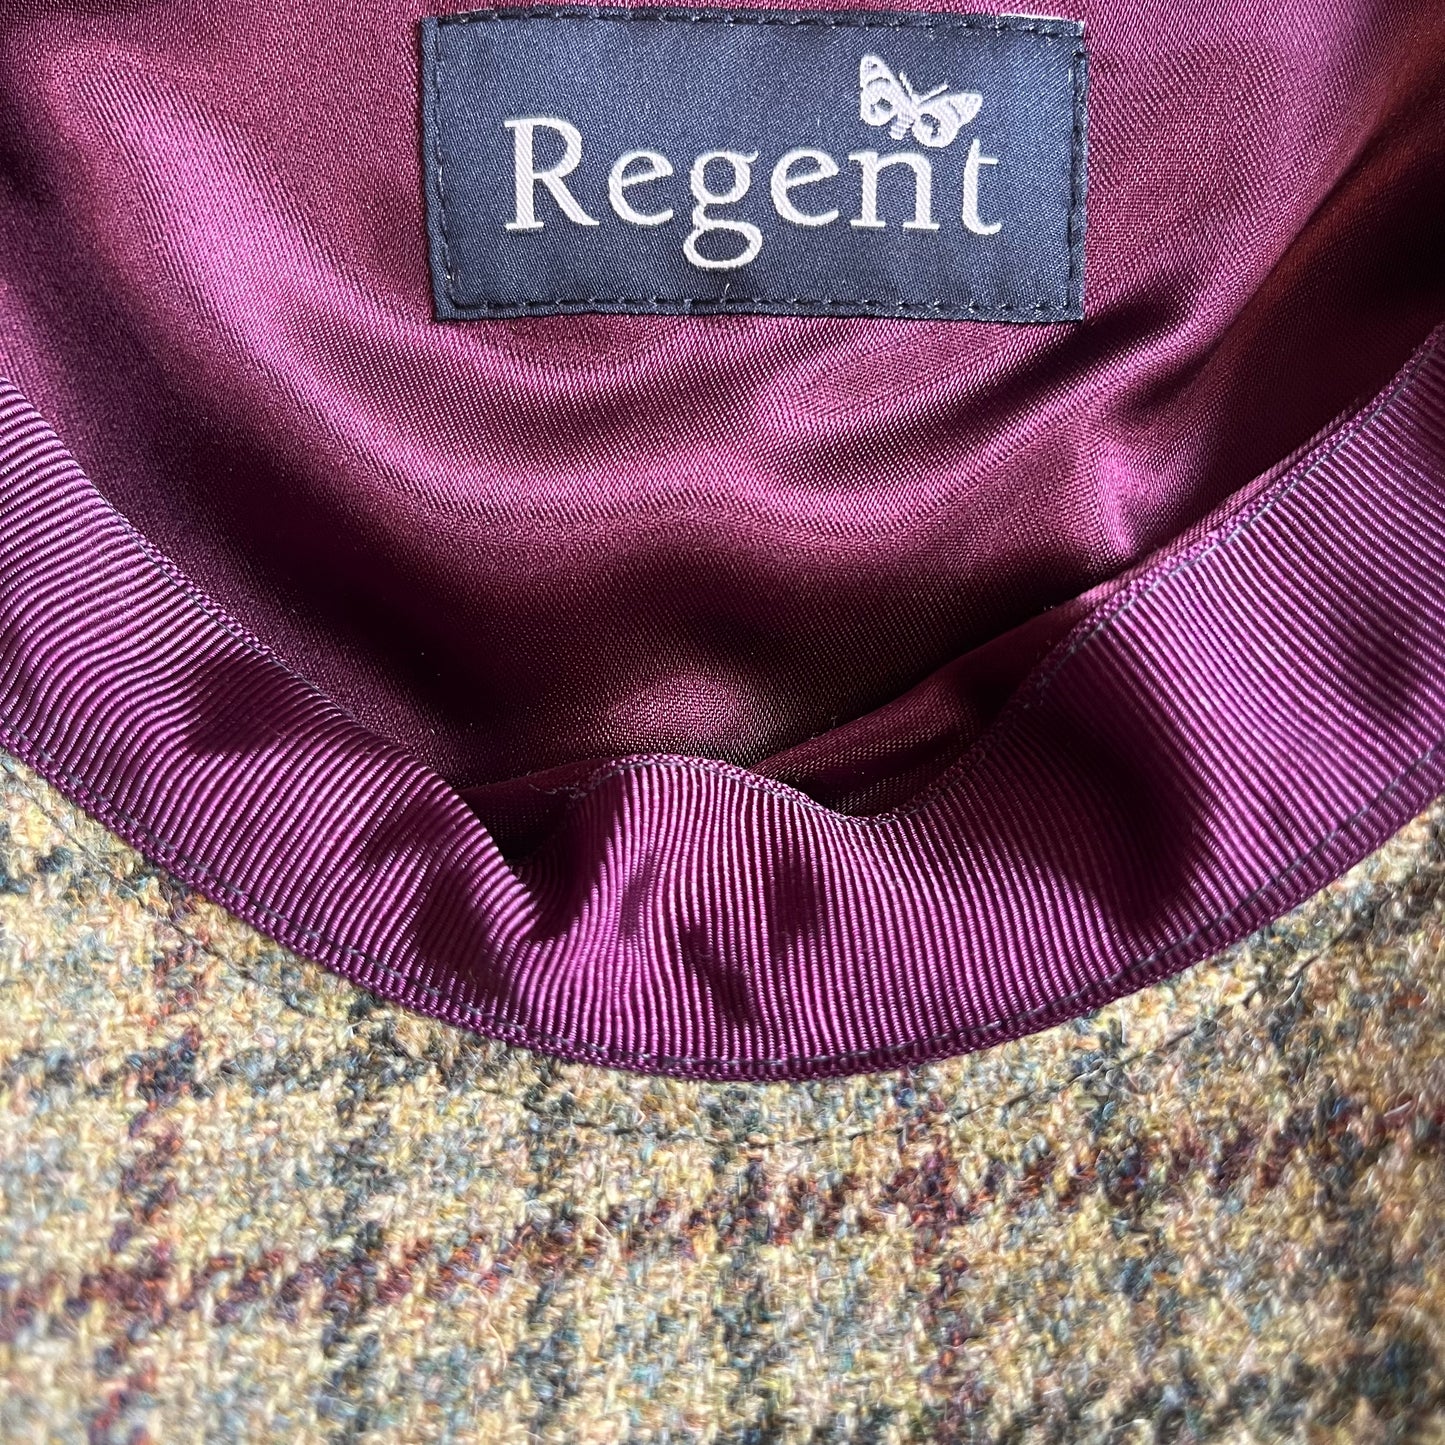 Regent - Baker Boy Cap - Green Tweed with Overcheck